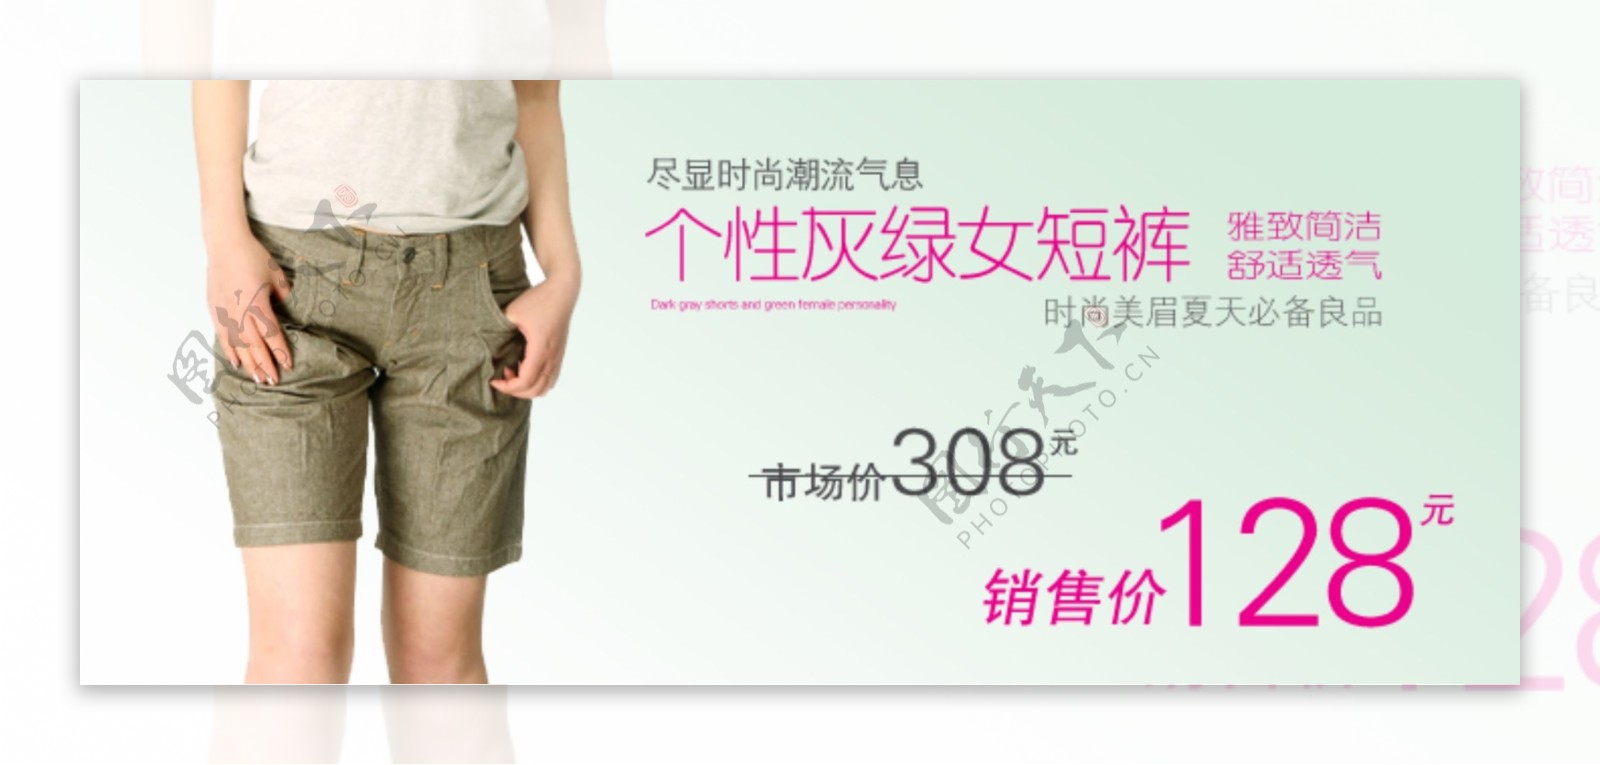 个性灰绿女短裤淘宝女装海报素材免费下载